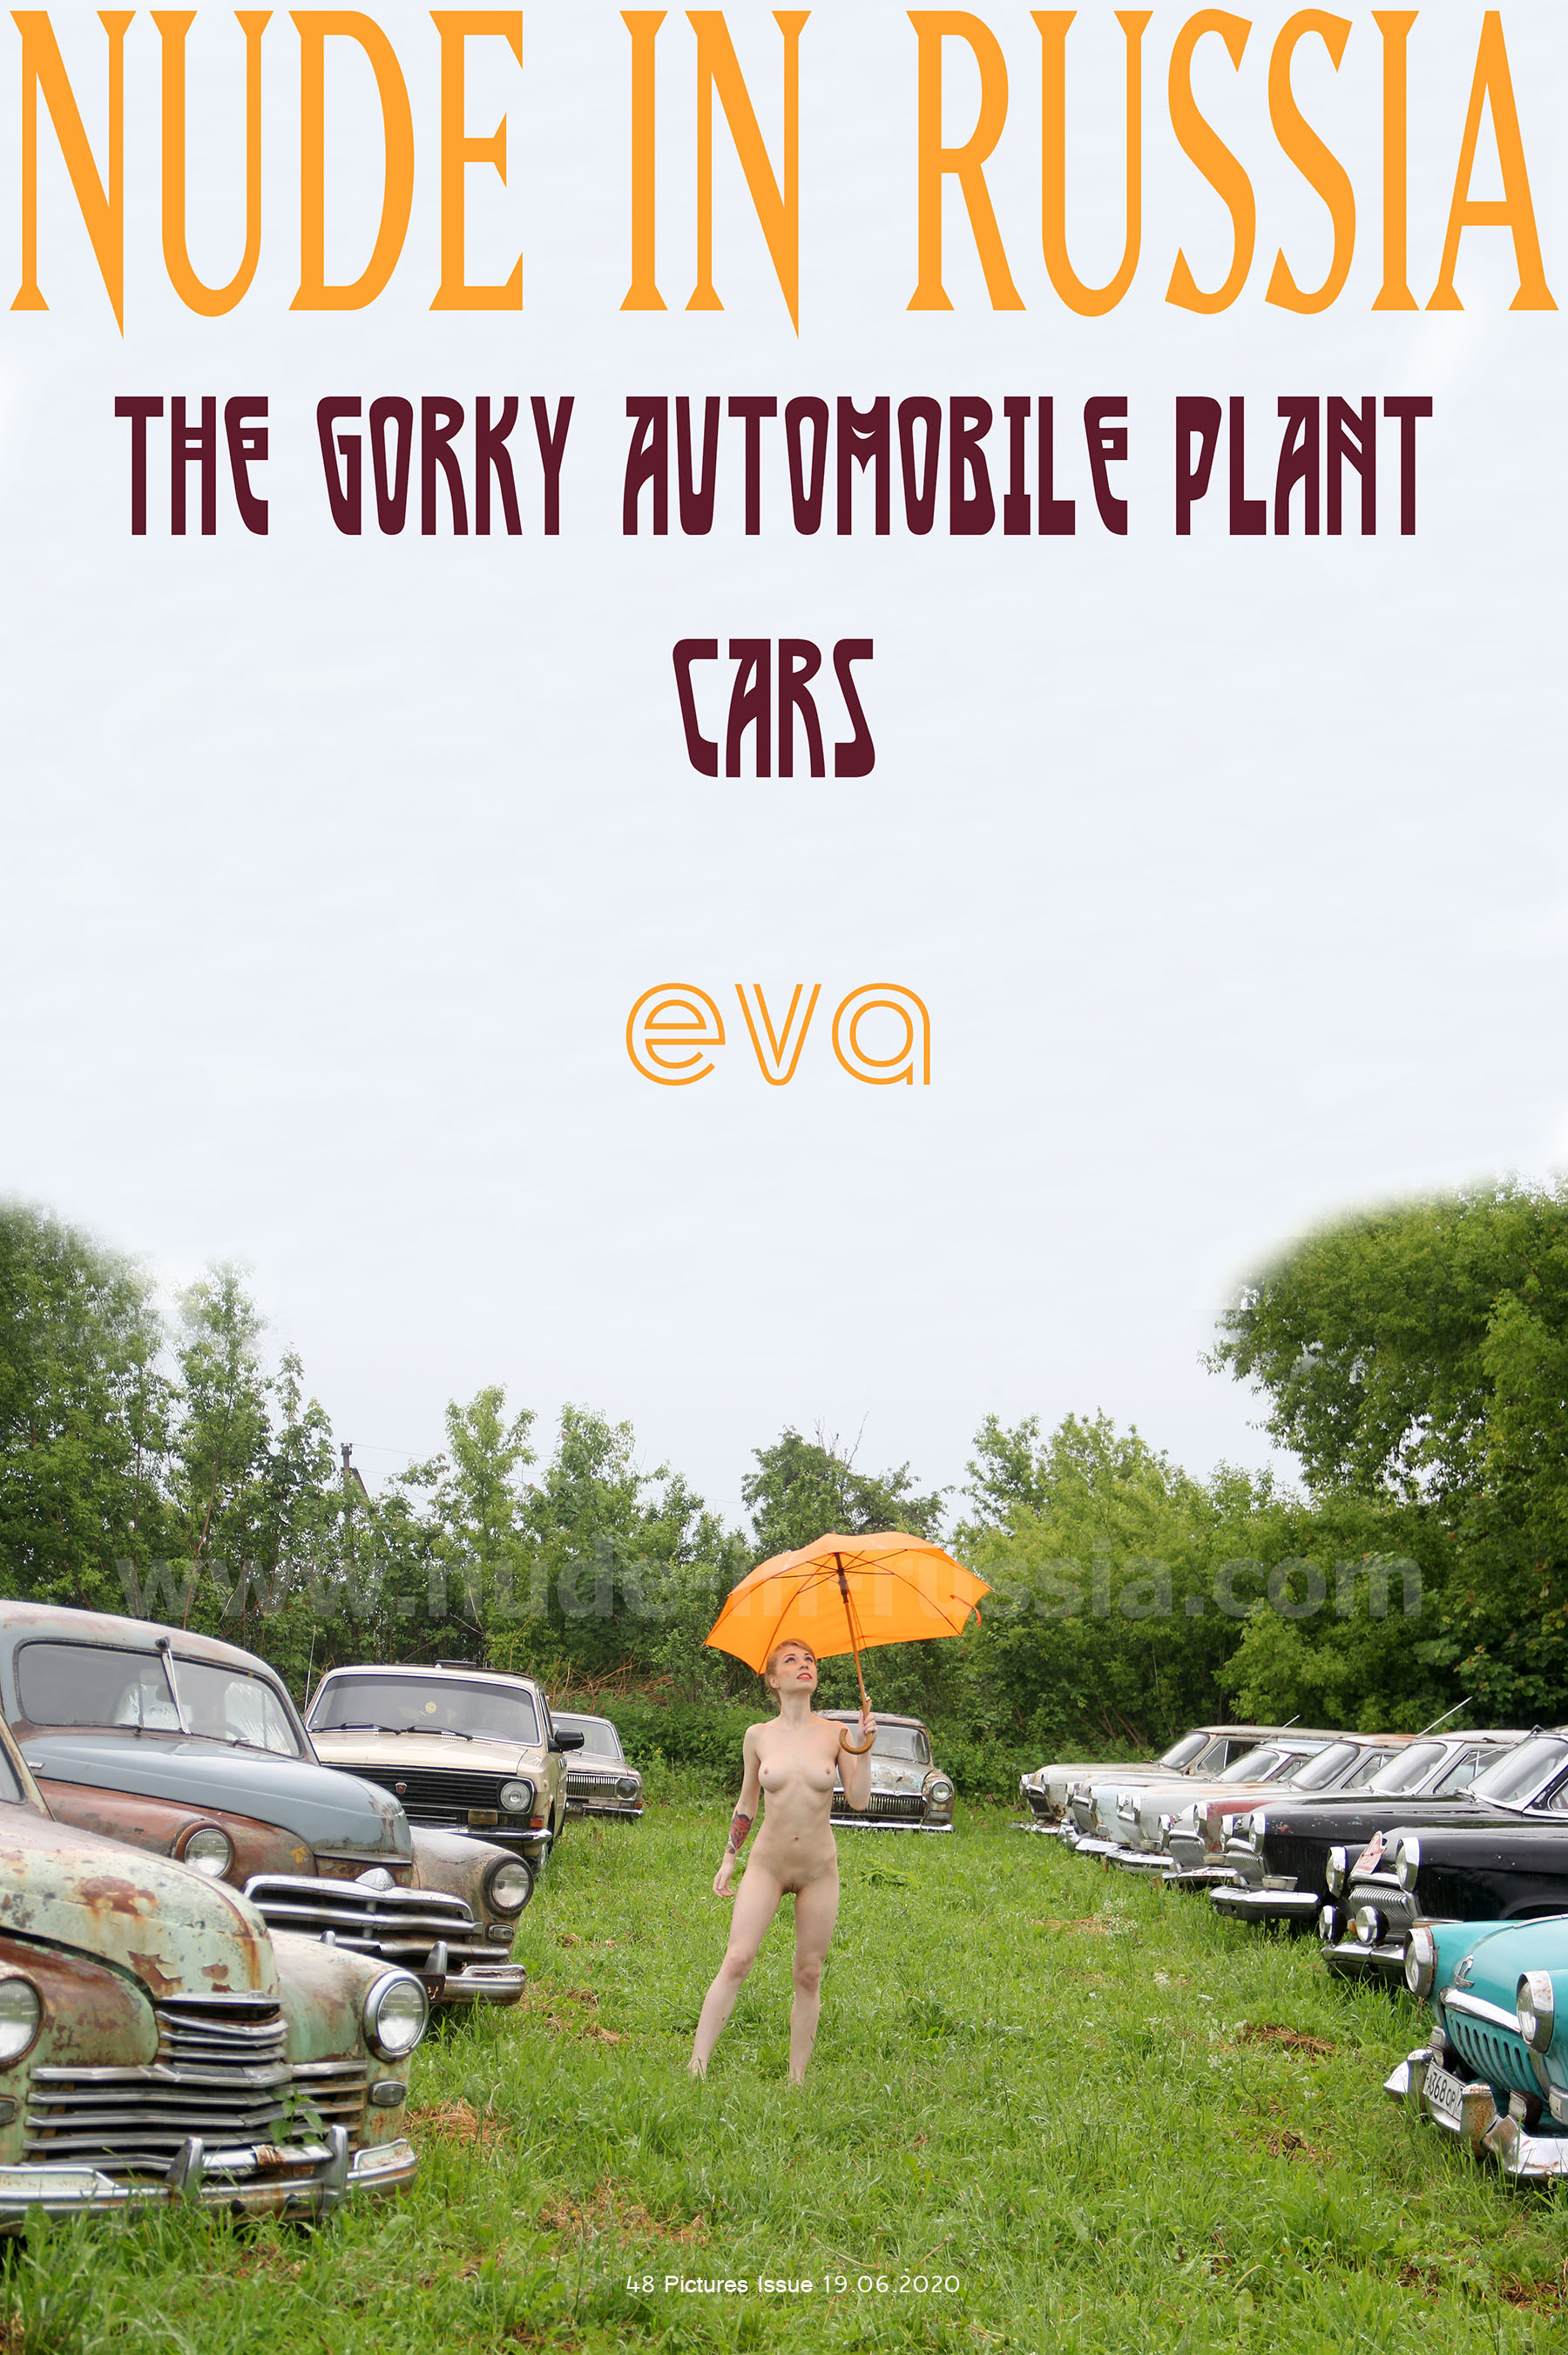 NIR-2020-06-19 - Eva 2 - Gorky Plant Cars - set3 (1).jpg